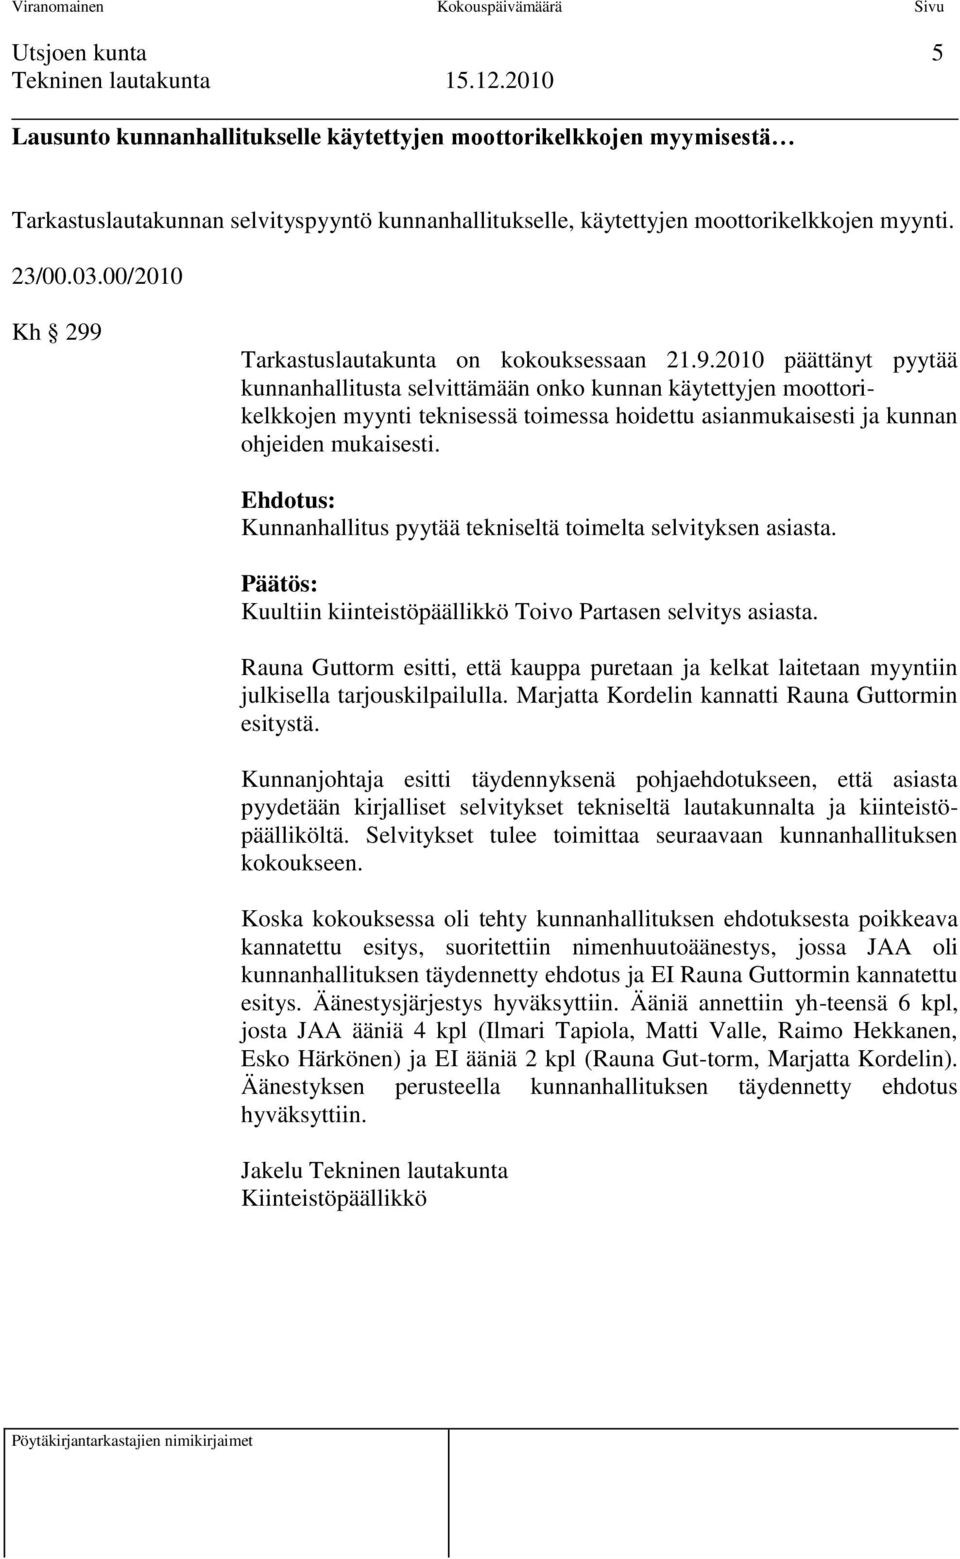 Ehdotus: Kunnanhallitus pyytää tekniseltä toimelta selvityksen asiasta. Päätös: Kuultiin kiinteistöpäällikkö Toivo Partasen selvitys asiasta.